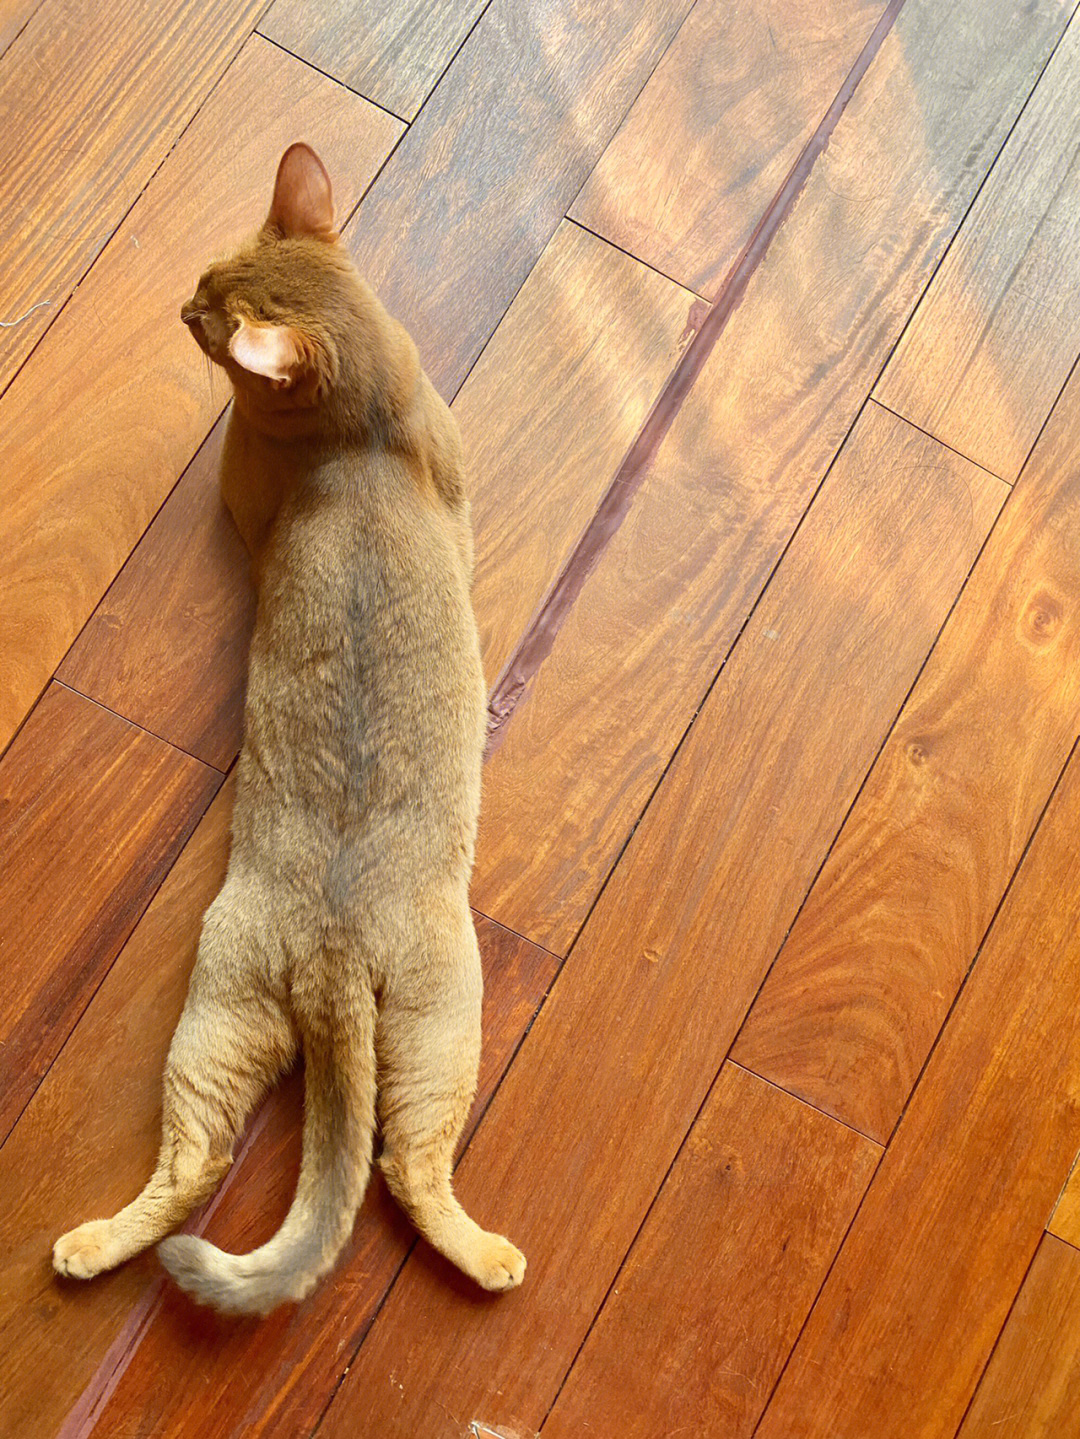 猫趴的正确姿势图片